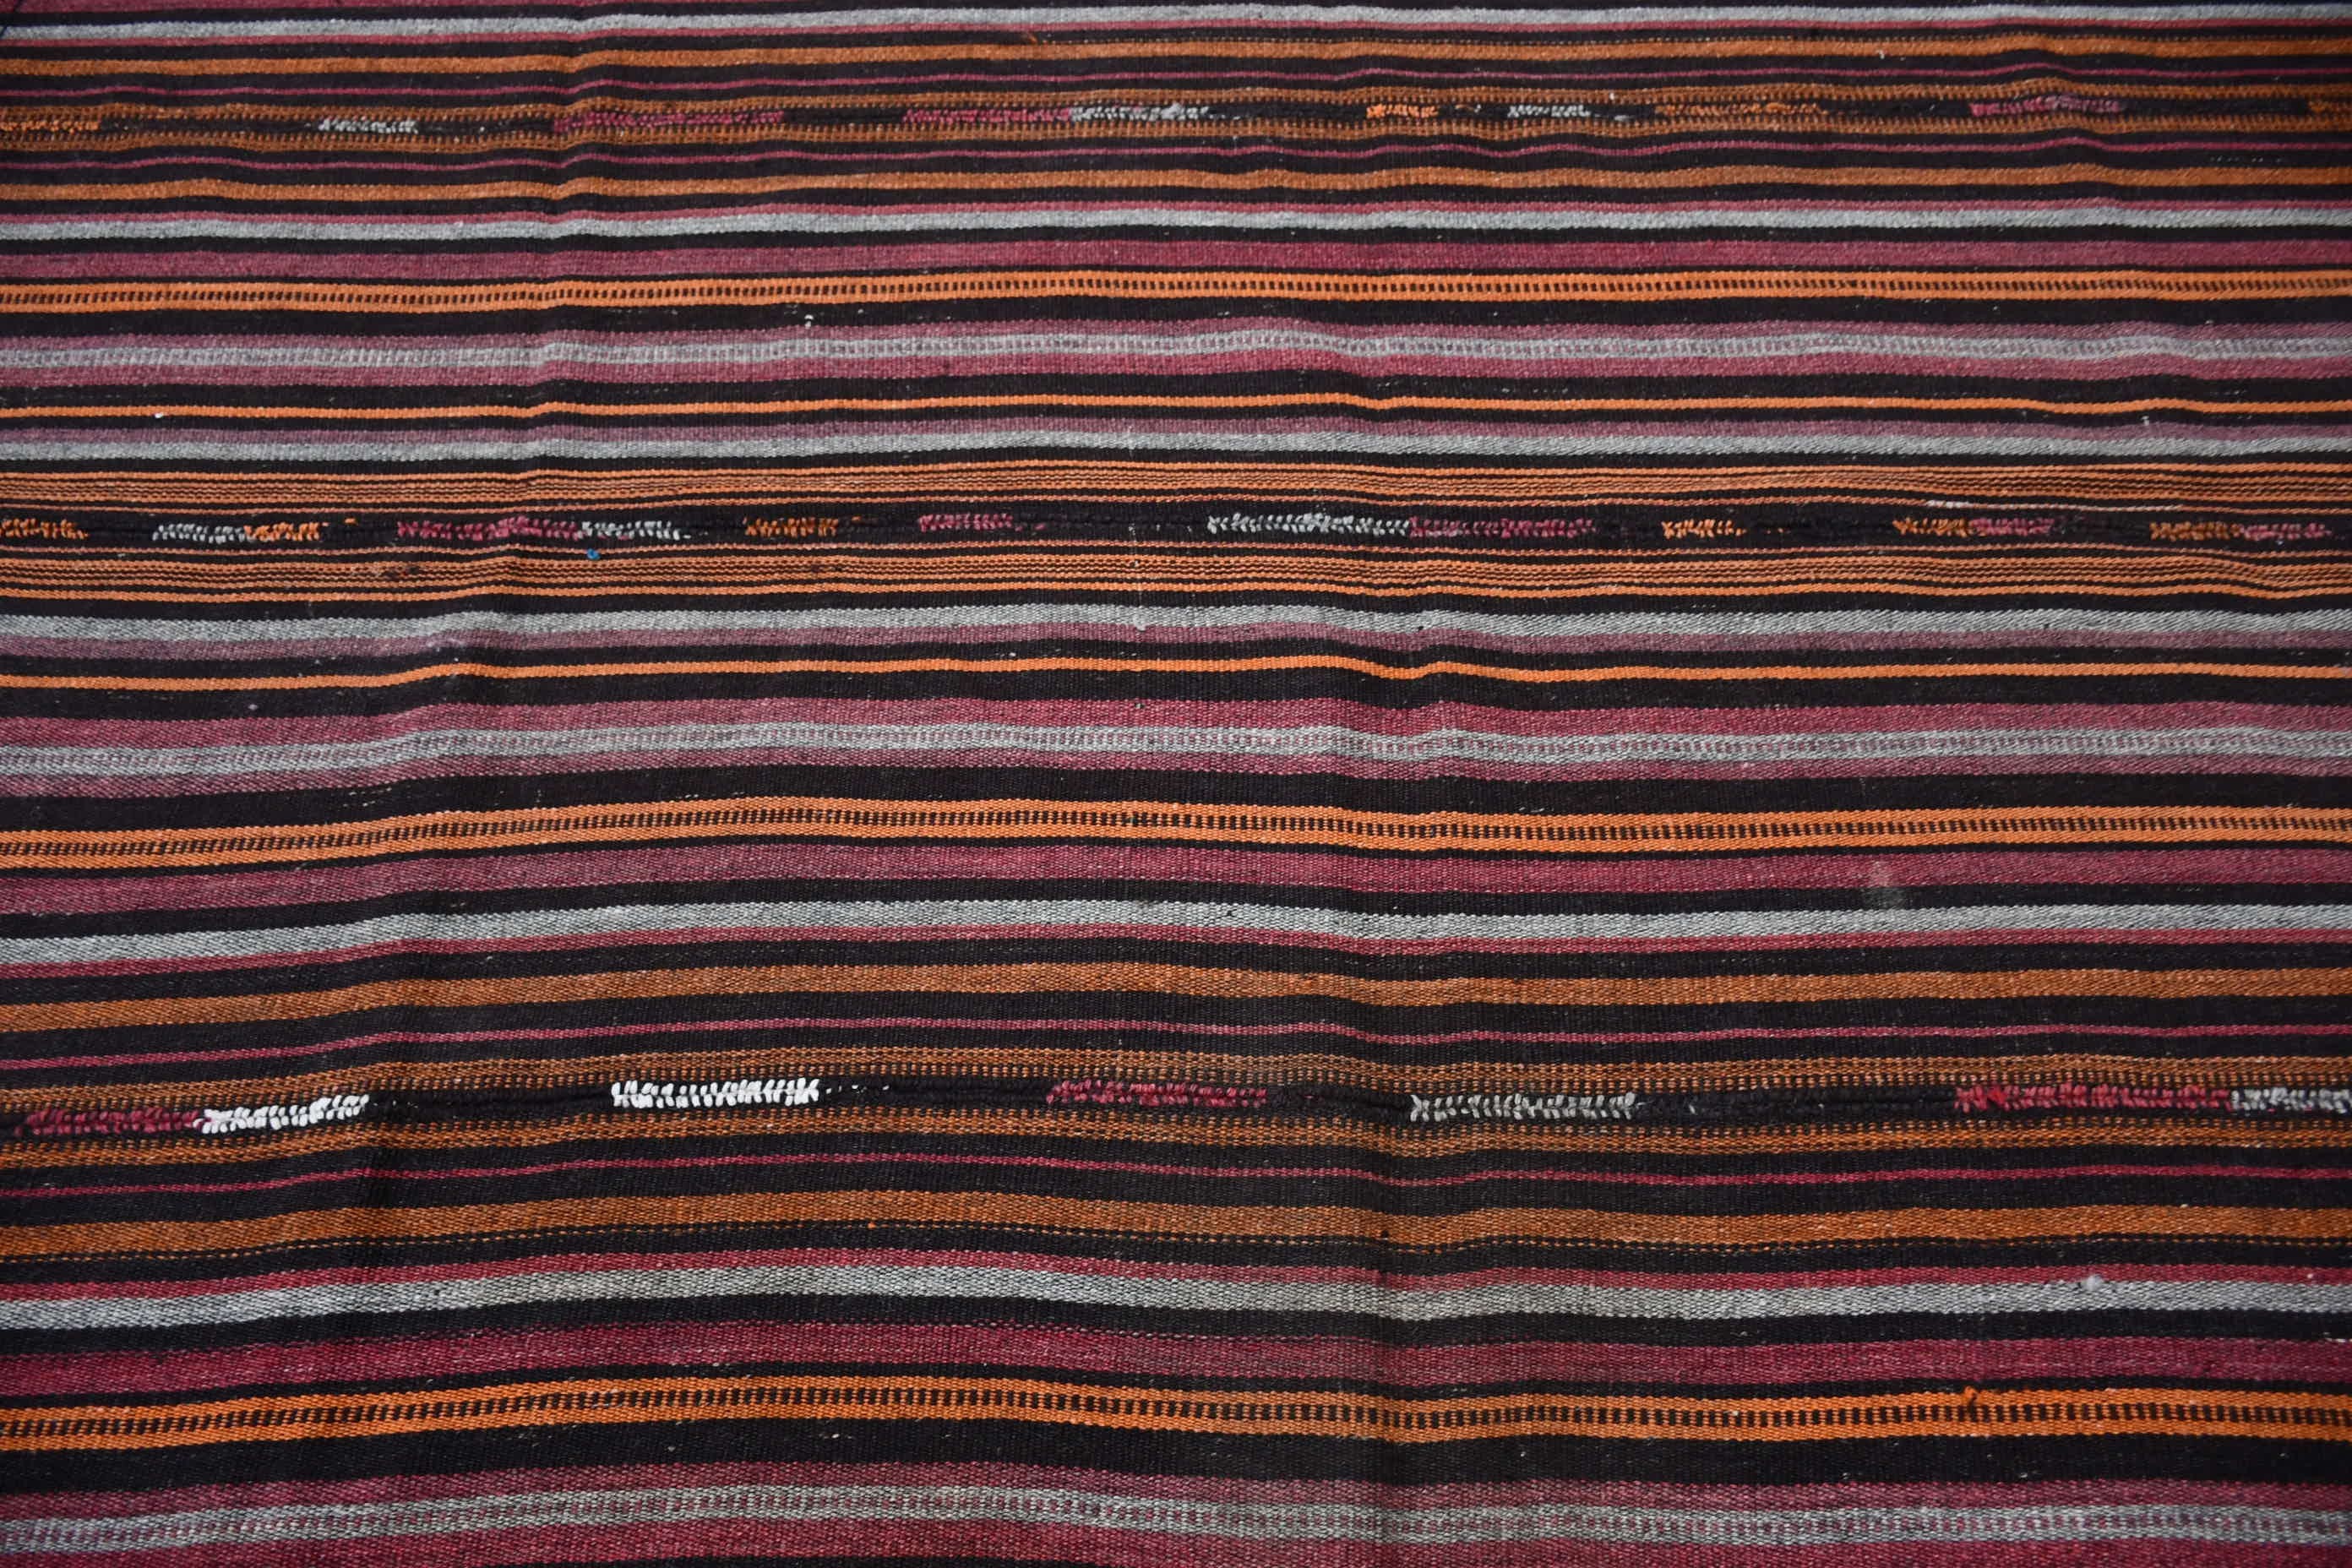 Turkish Rug, Vintage Rug, 5.9x8.5 ft Large Rugs, Salon Rug, Bedroom Rug, Brown Antique Rug, Home Decor Rug, Dorm Rug, Kilim, Oriental Rugs